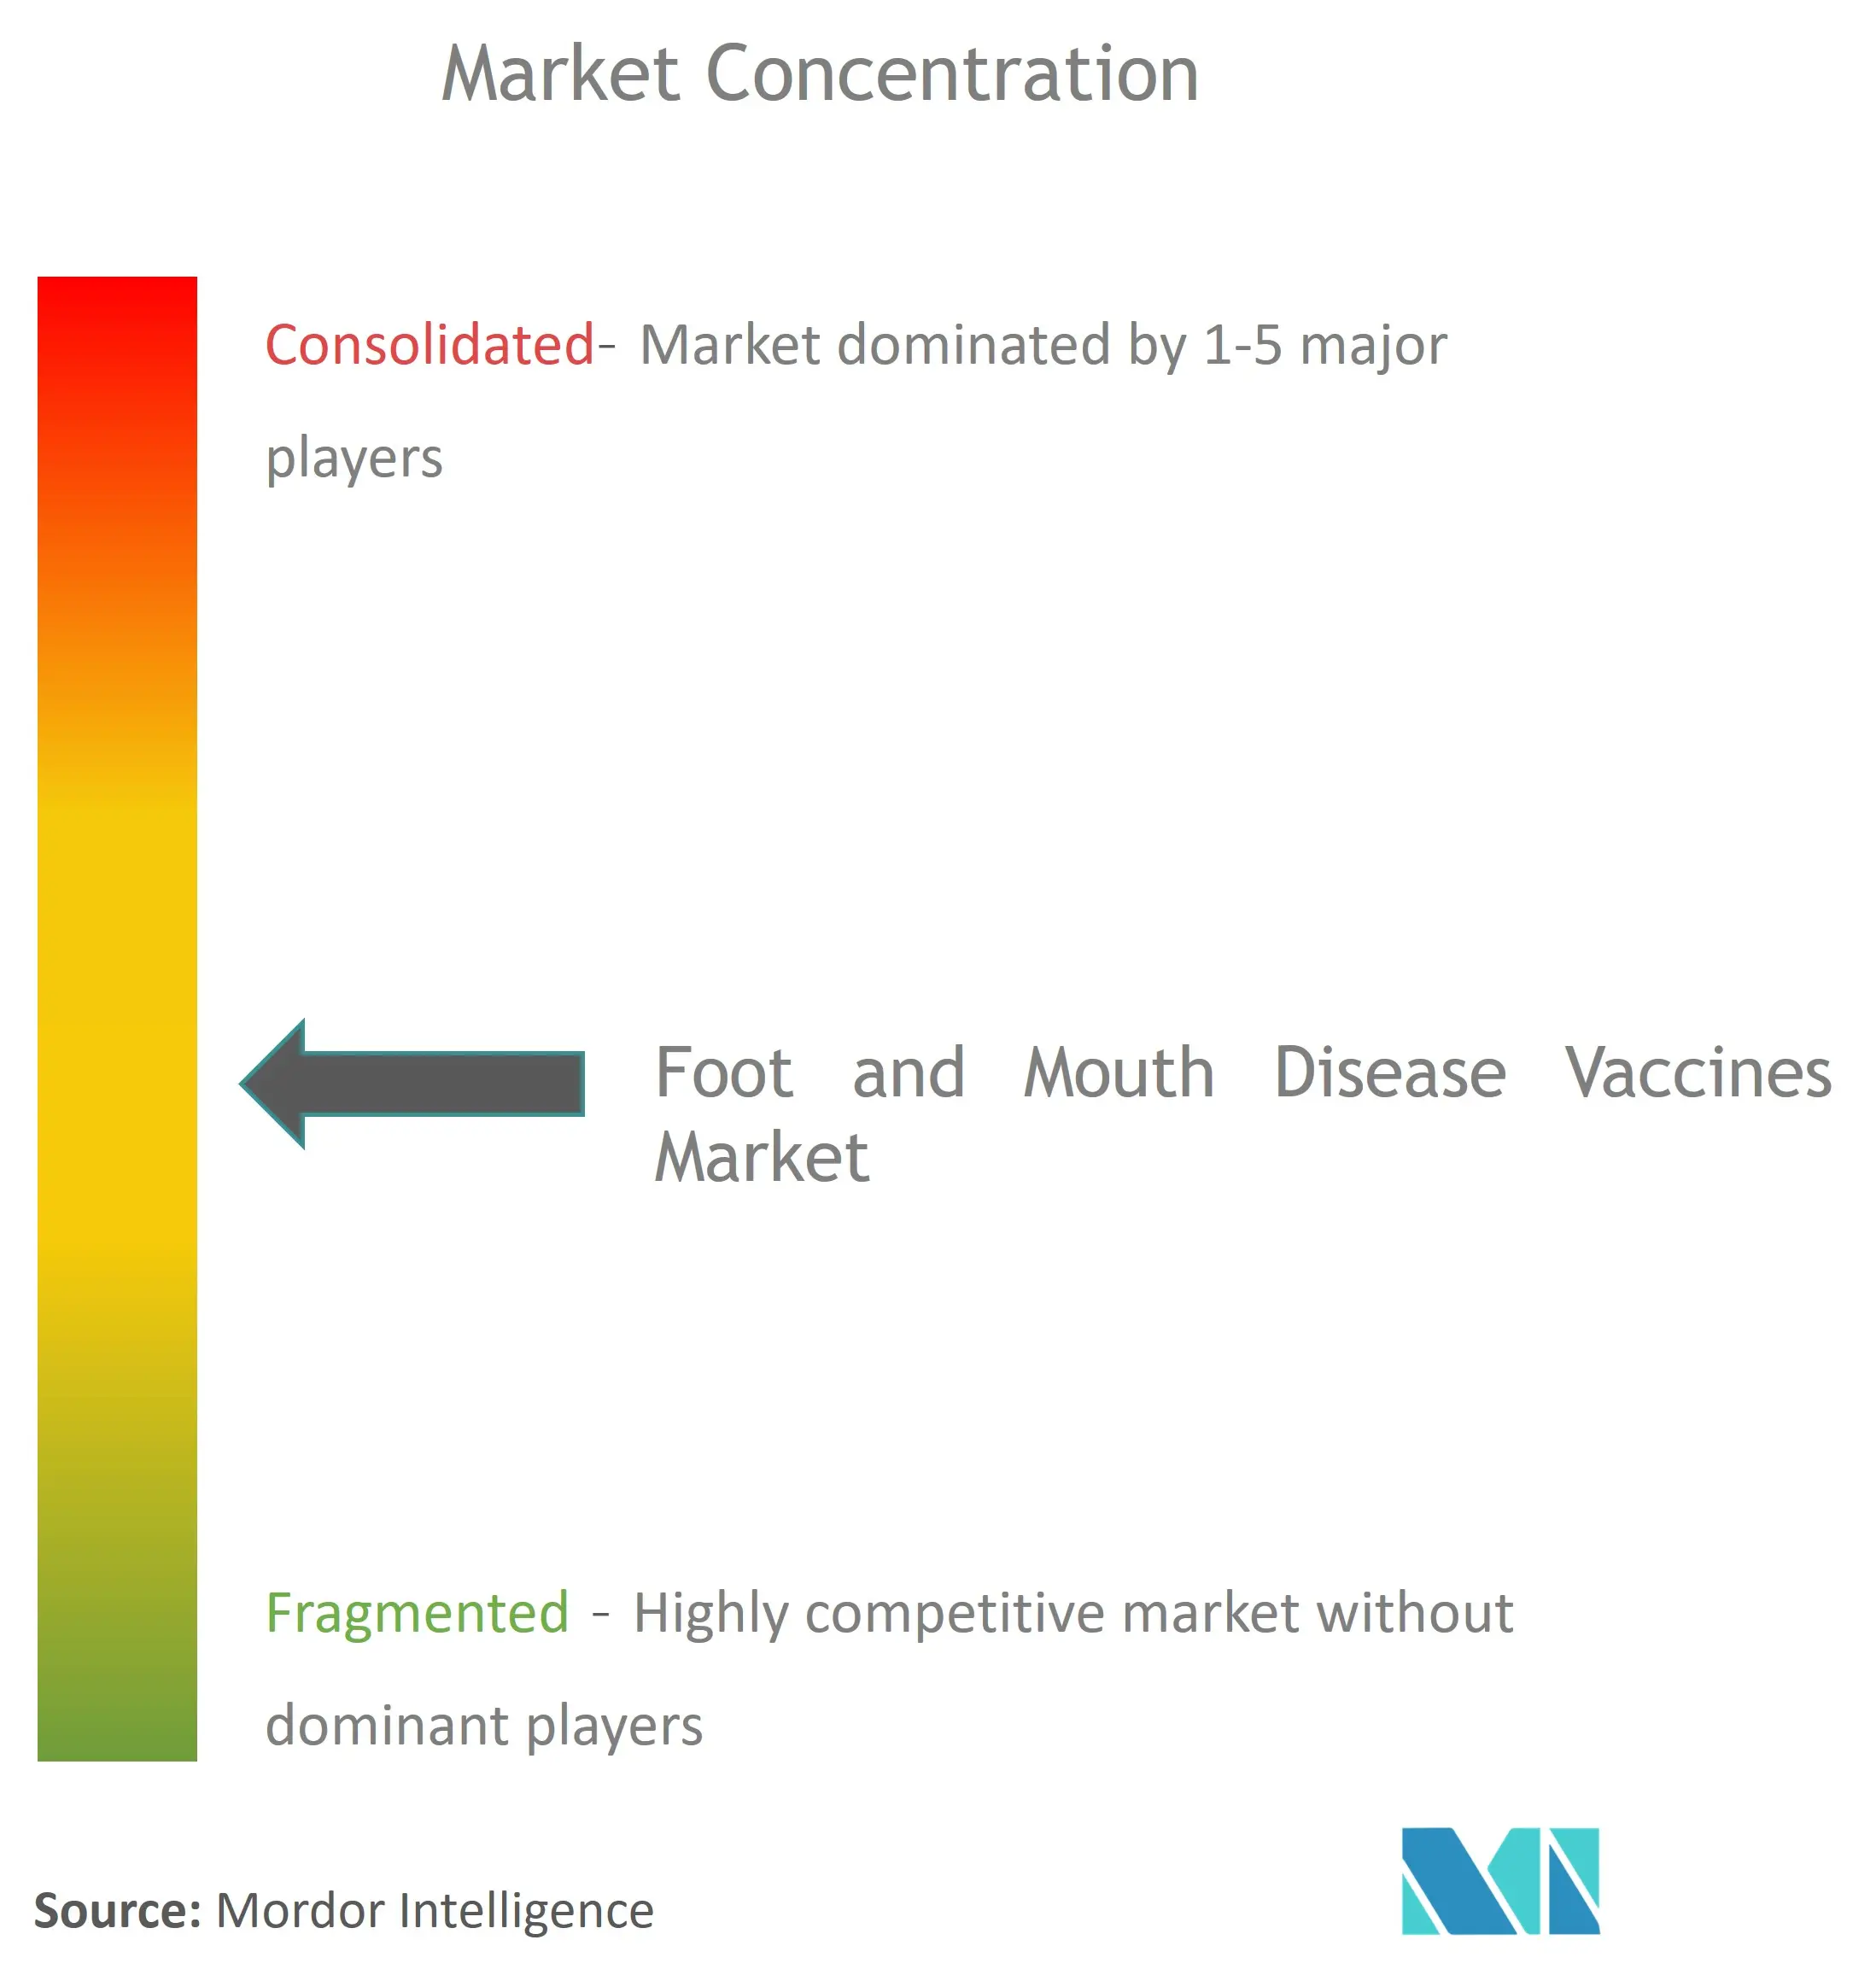 Vacunas mundiales contra la fiebre aftosaConcentración del Mercado